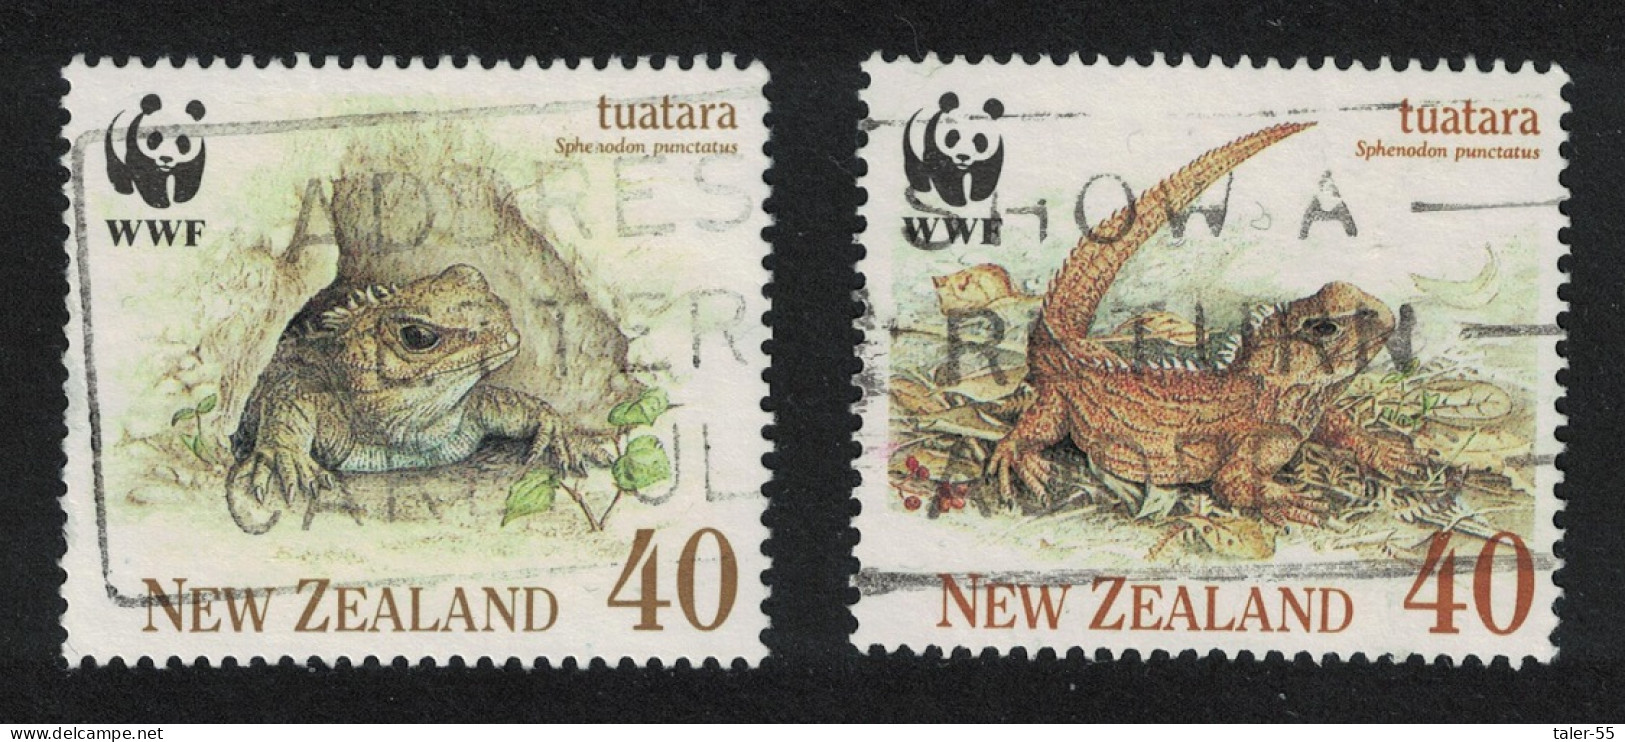 New Zealand WWF Tuatara 2V 1991 Canc SG#1590-1593 MI#1160-1163 Sc#1023-1026 - Used Stamps